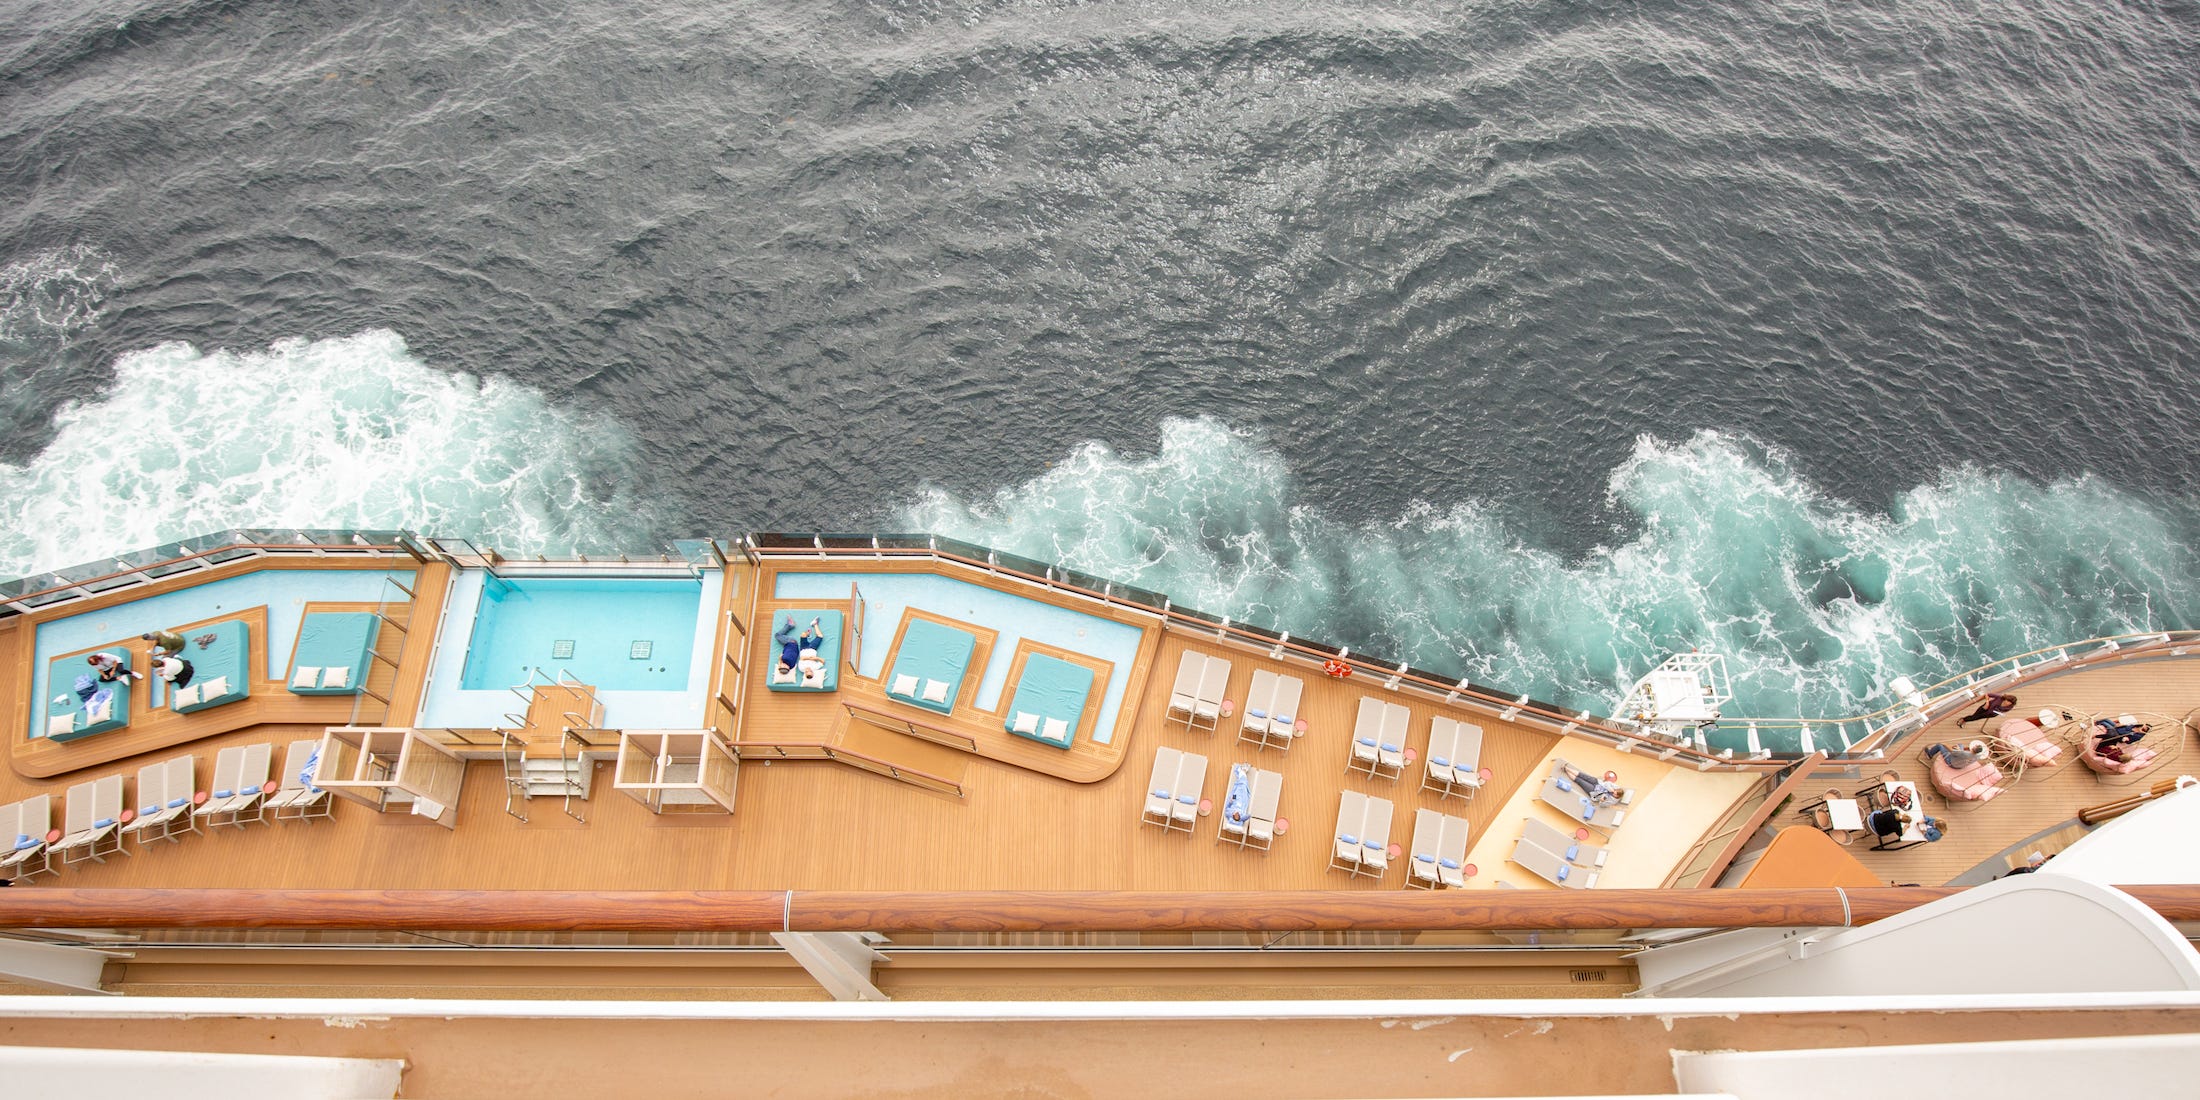 Norwegian Prima van Norwegian Cruise Line heeft voorzieningen zoals een kartbaan en een virtual reality-speelhal.